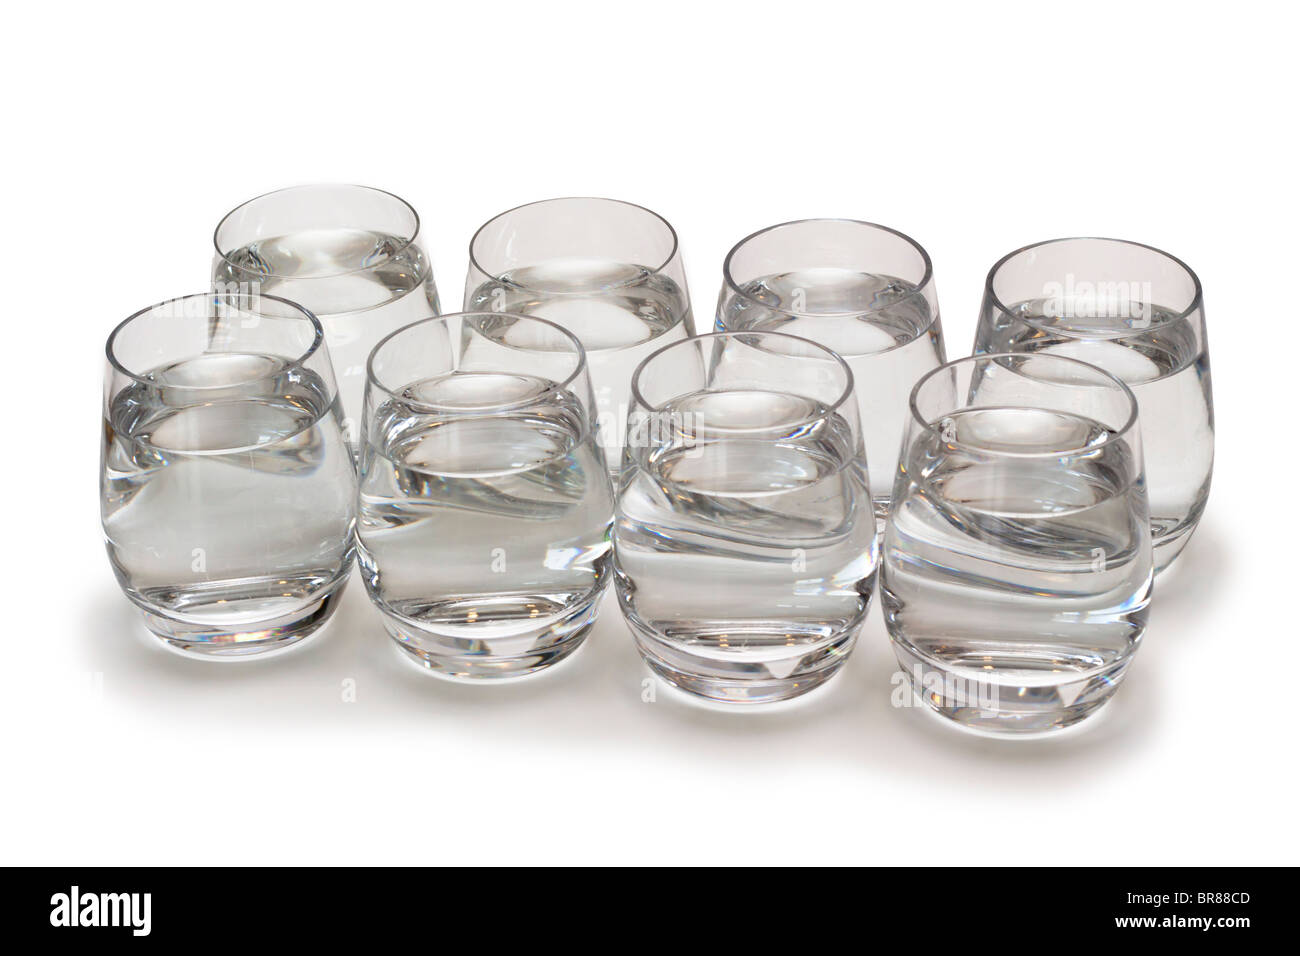 8 bicchieri di acqua. Immagine concettuale per illustrare il requisito di sana a bere 8 bicchieri di acqua ogni giorno Foto Stock